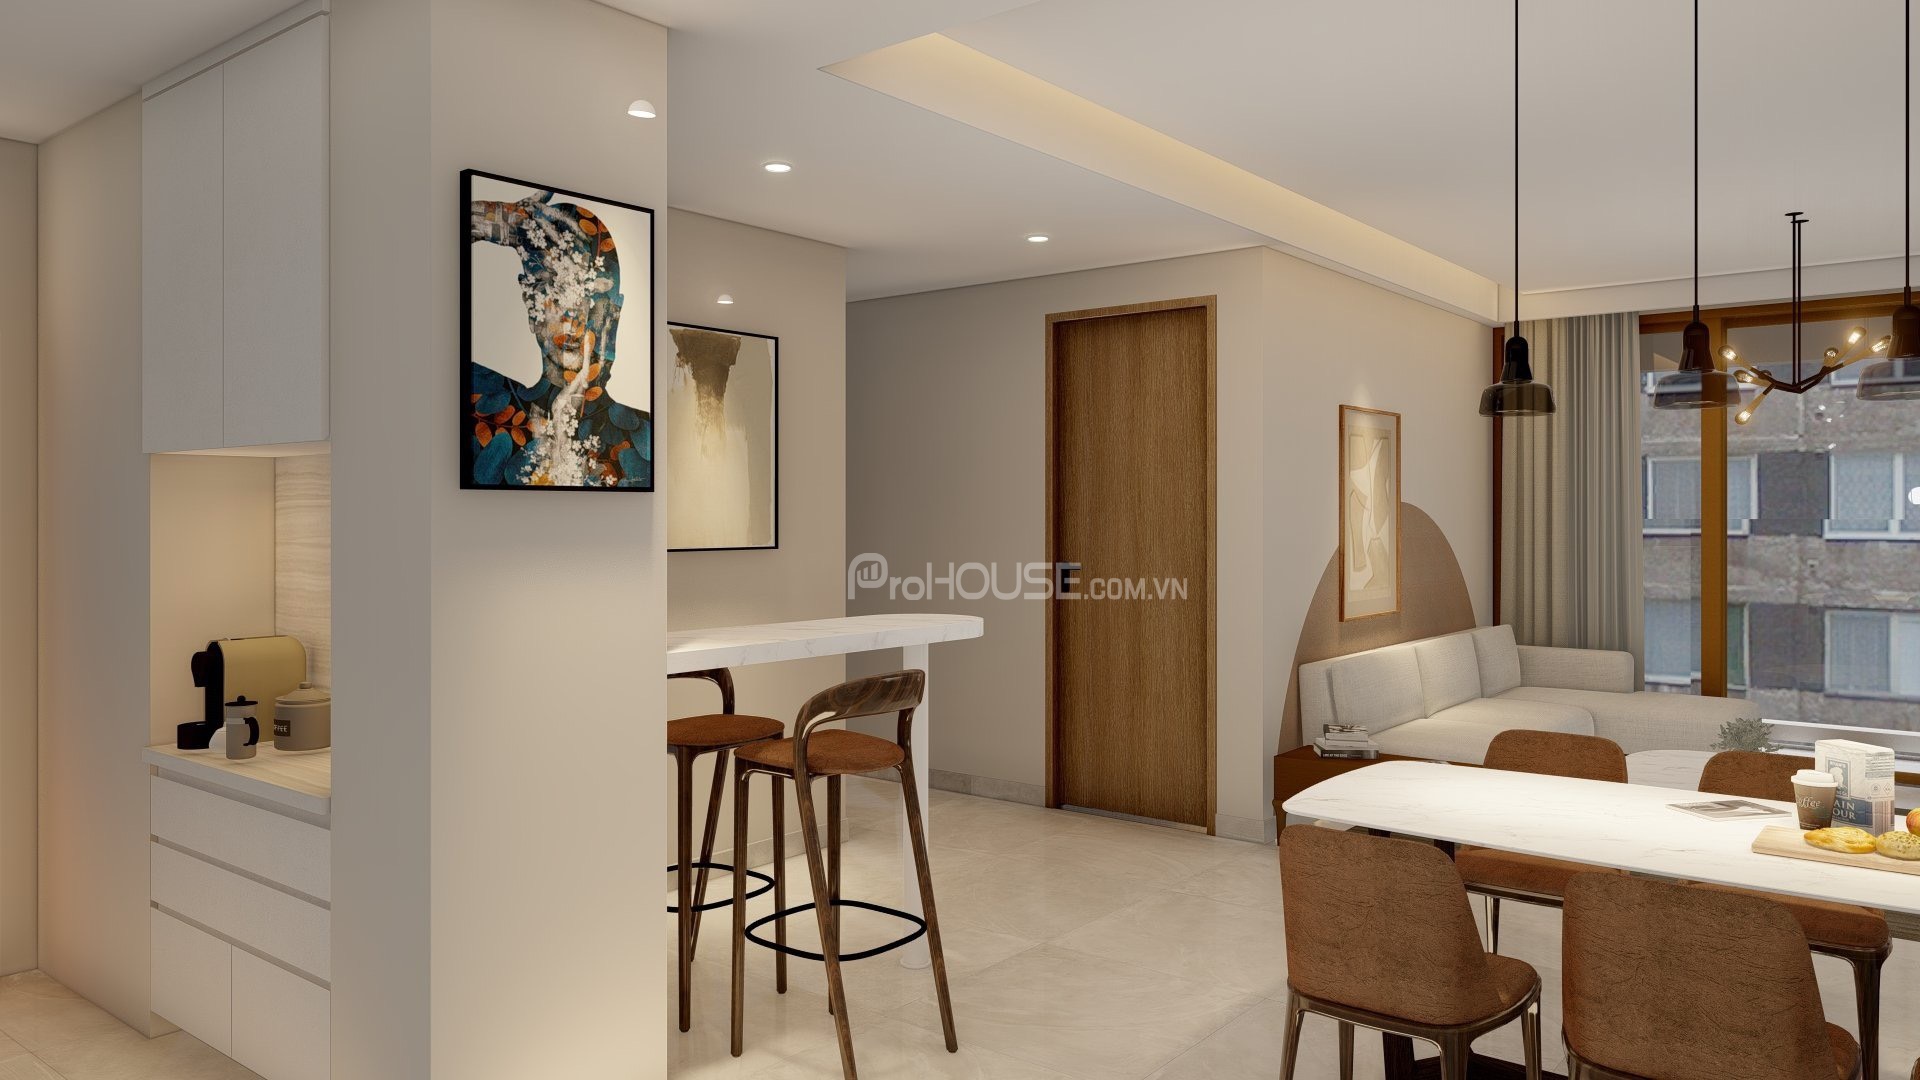 Cho thuê căn hộ đẹp 2 phòng ngủ ở Midtown Phú Mỹ Hưng với đầy đủ nội thất